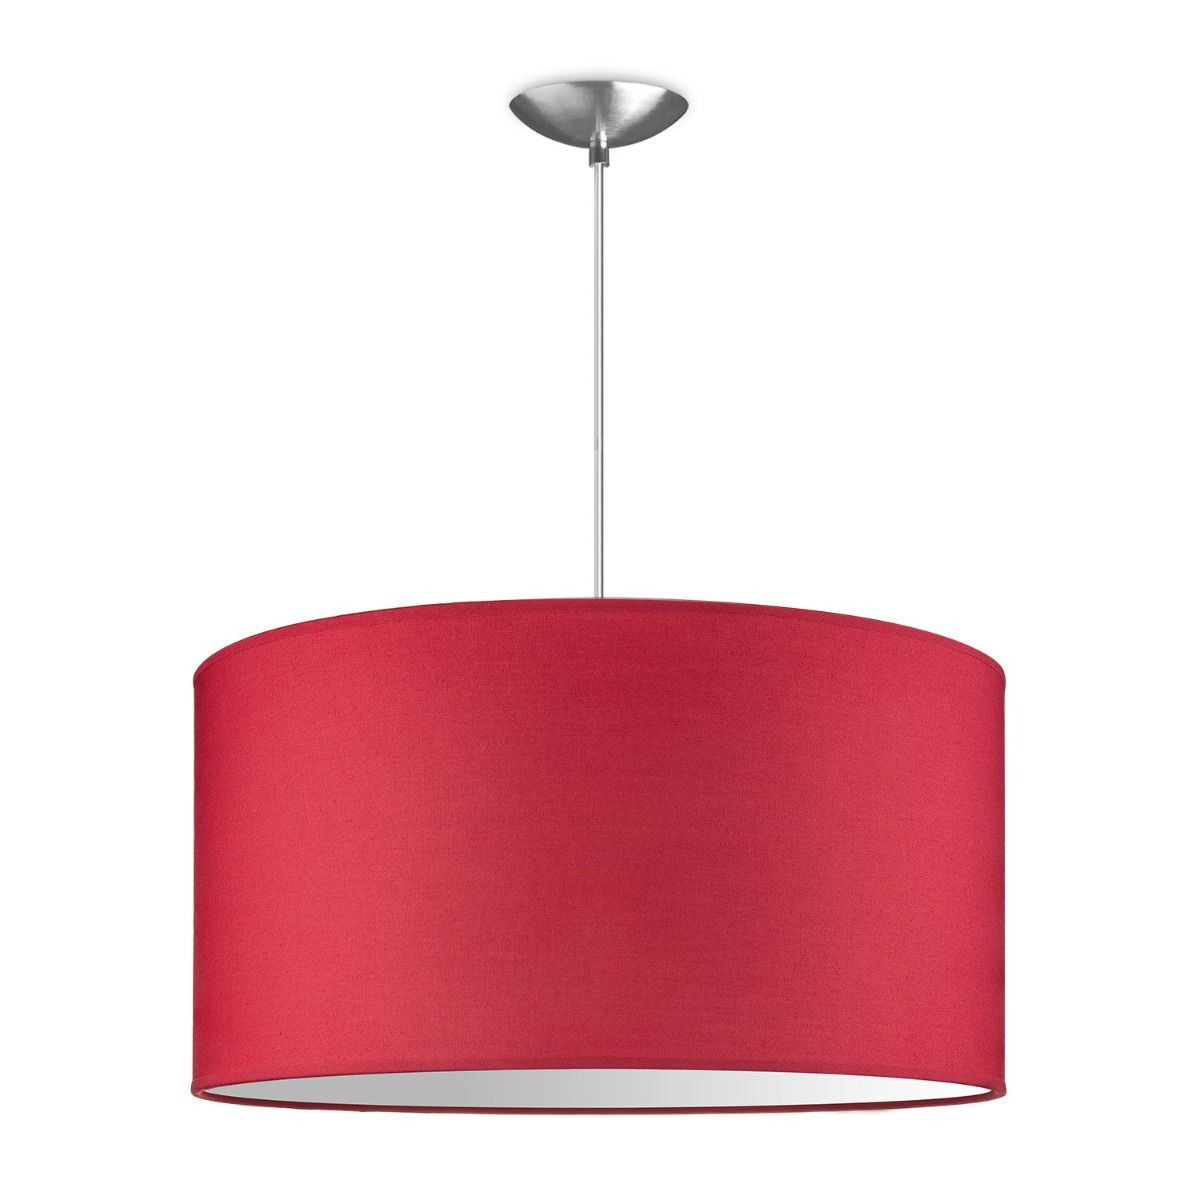 Light depot - hanglamp basic bling Ø 50 cm - rood - Outlet